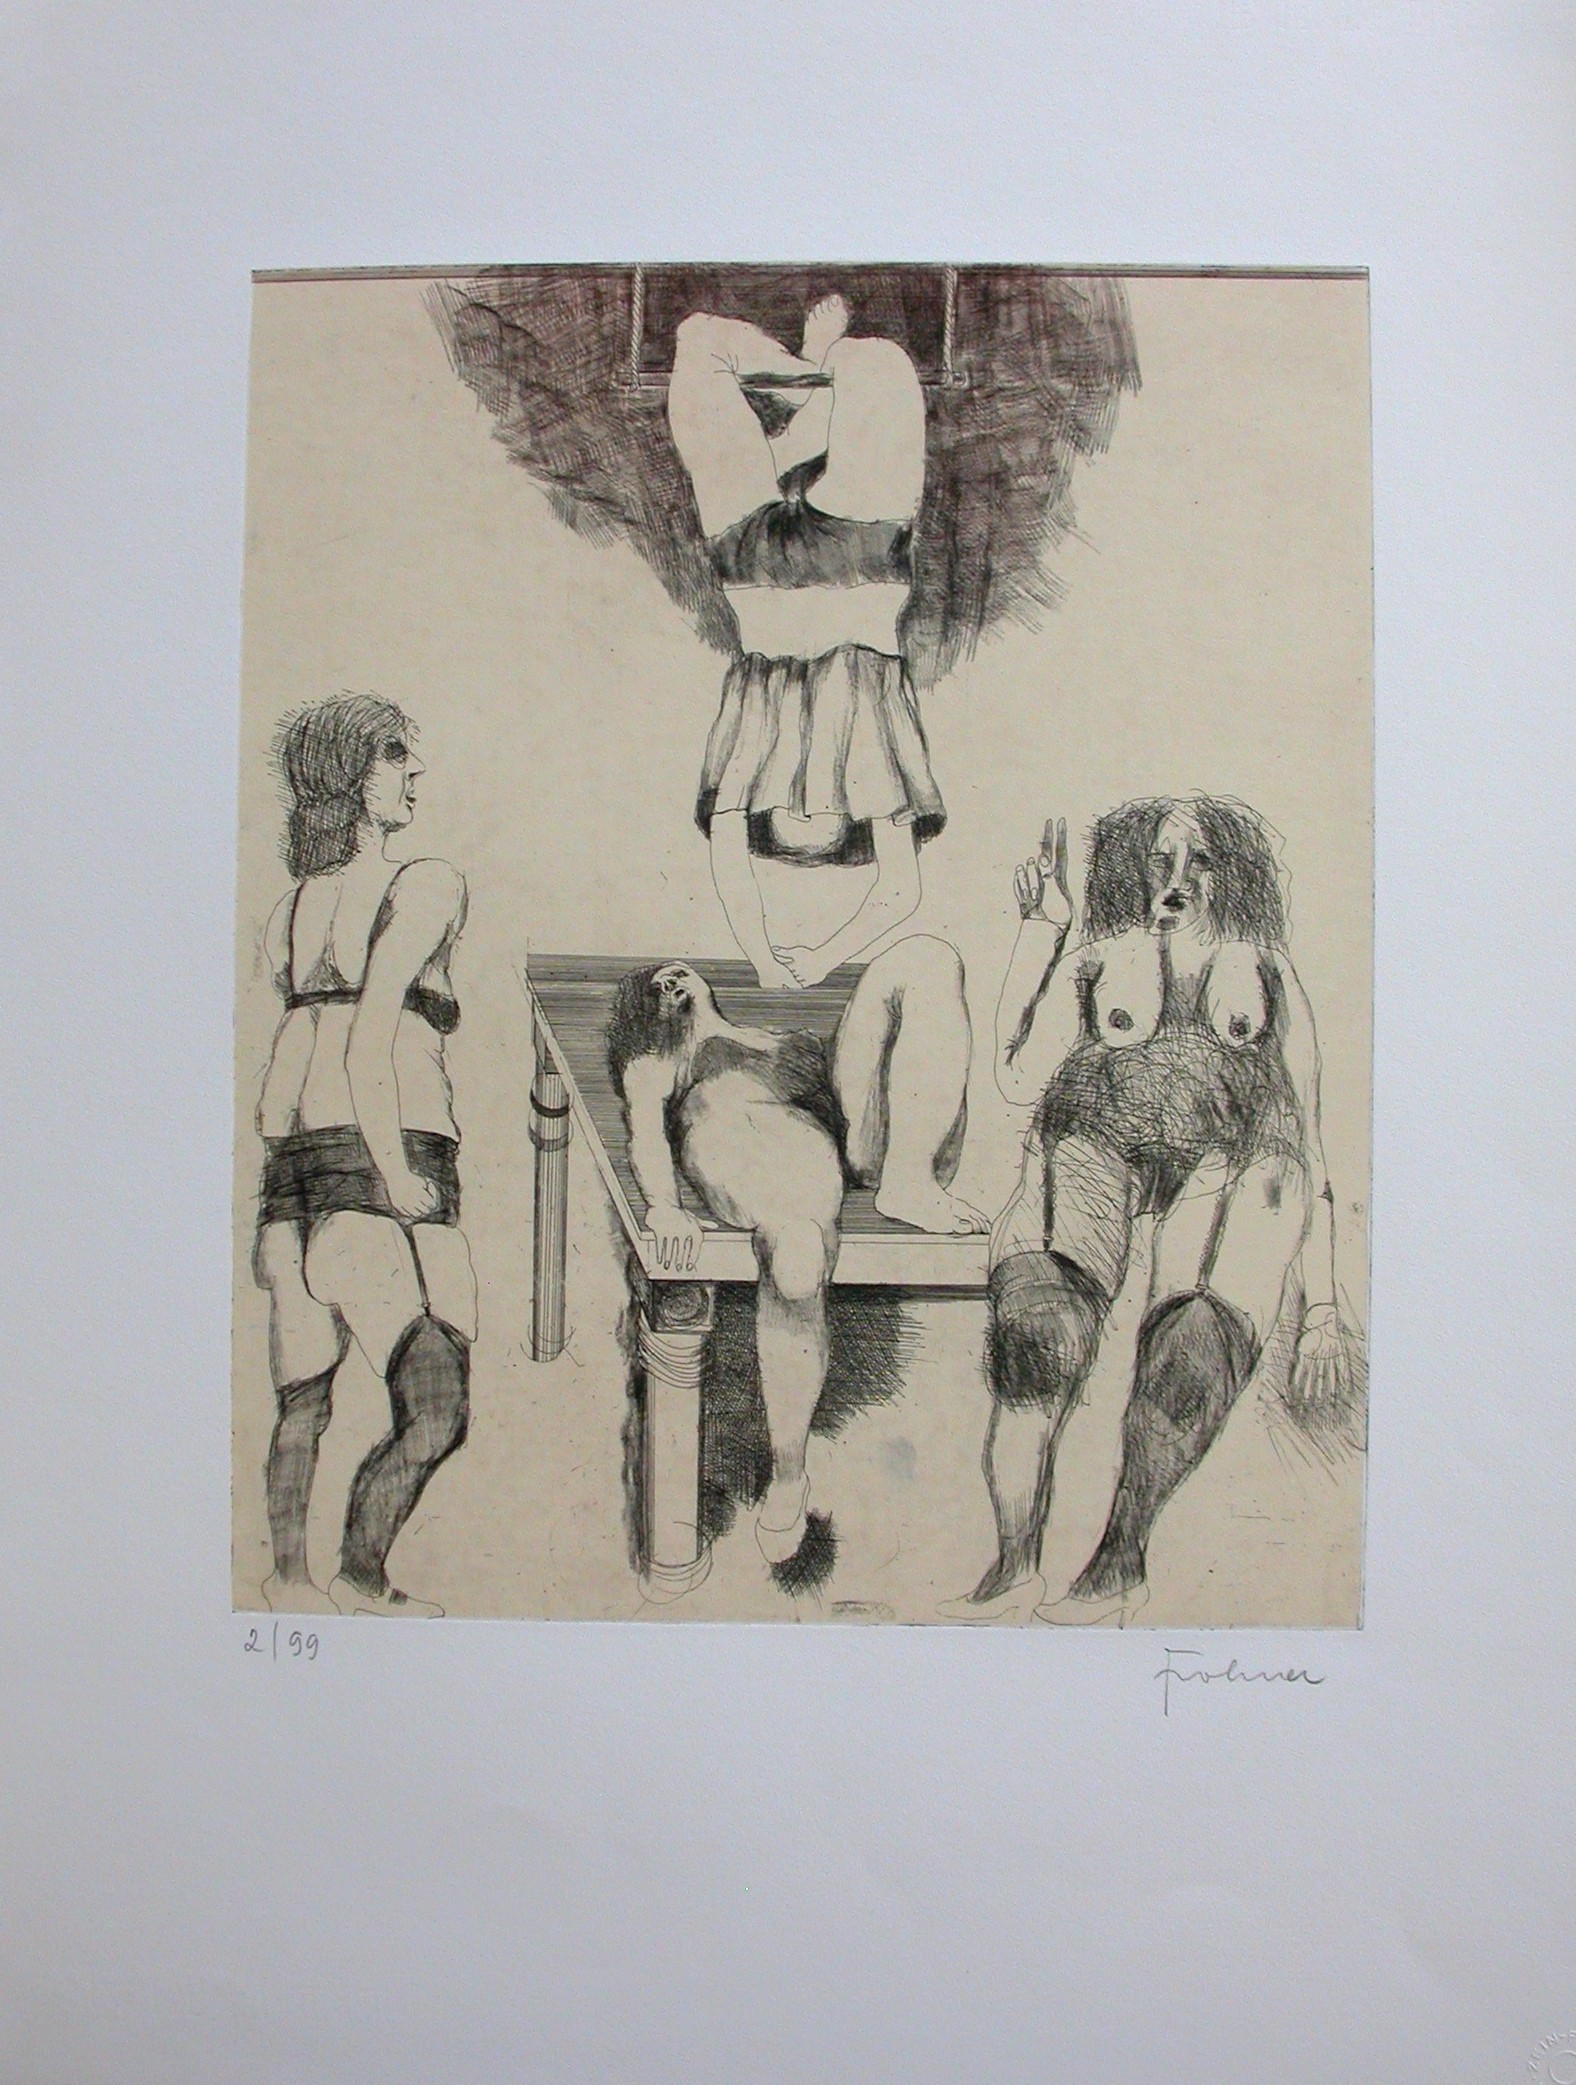  Frohner (1934 - 2007) "Nackte Frauen in erotischer Pose"